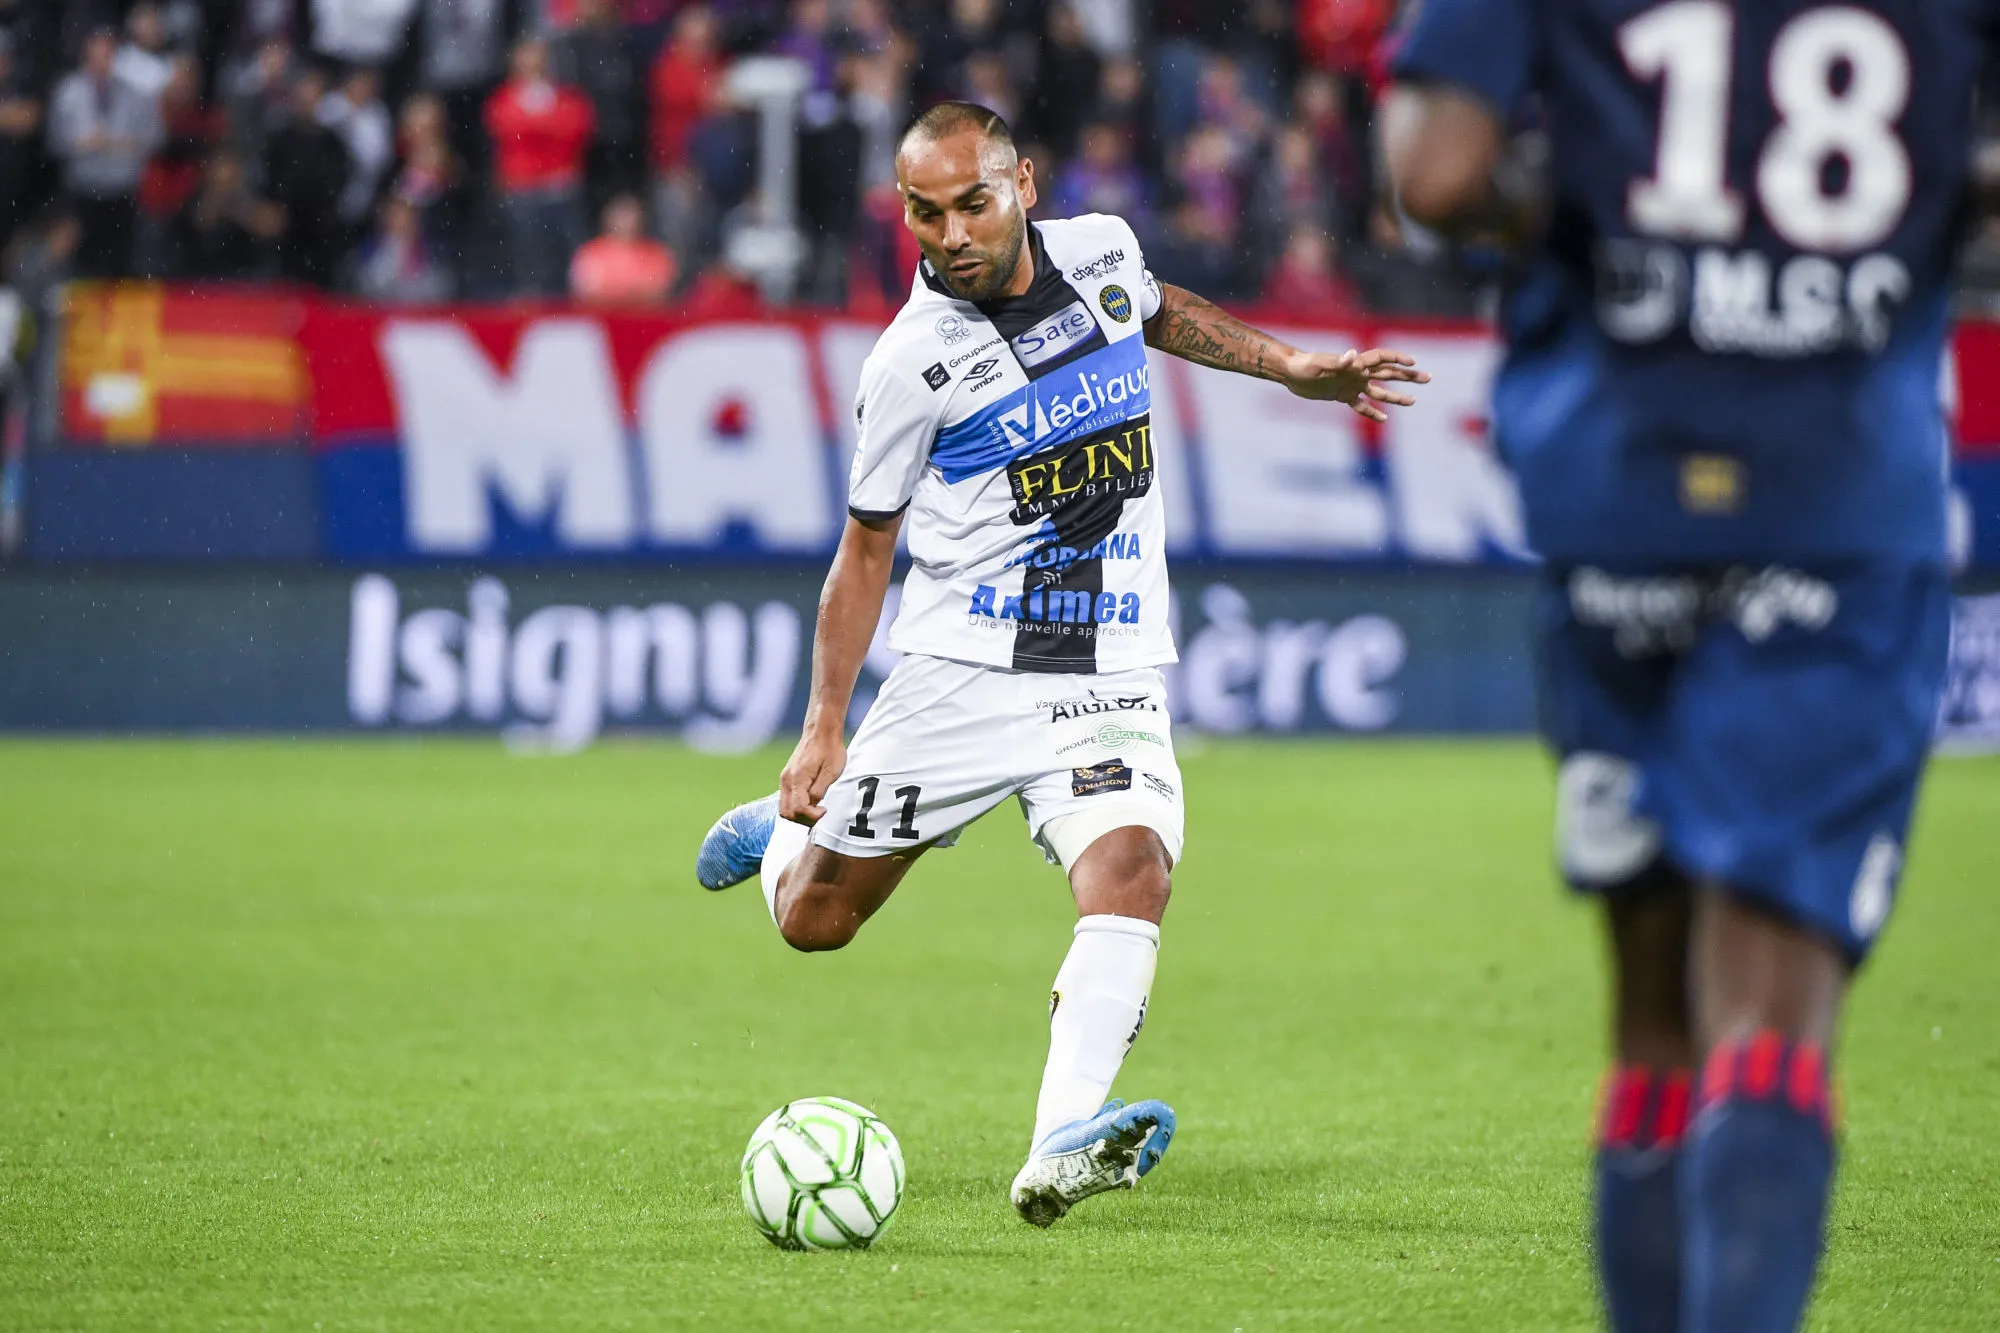 Pronostic Paris FC Chambly : Analyse, prono et cotes du match de Ligue 2